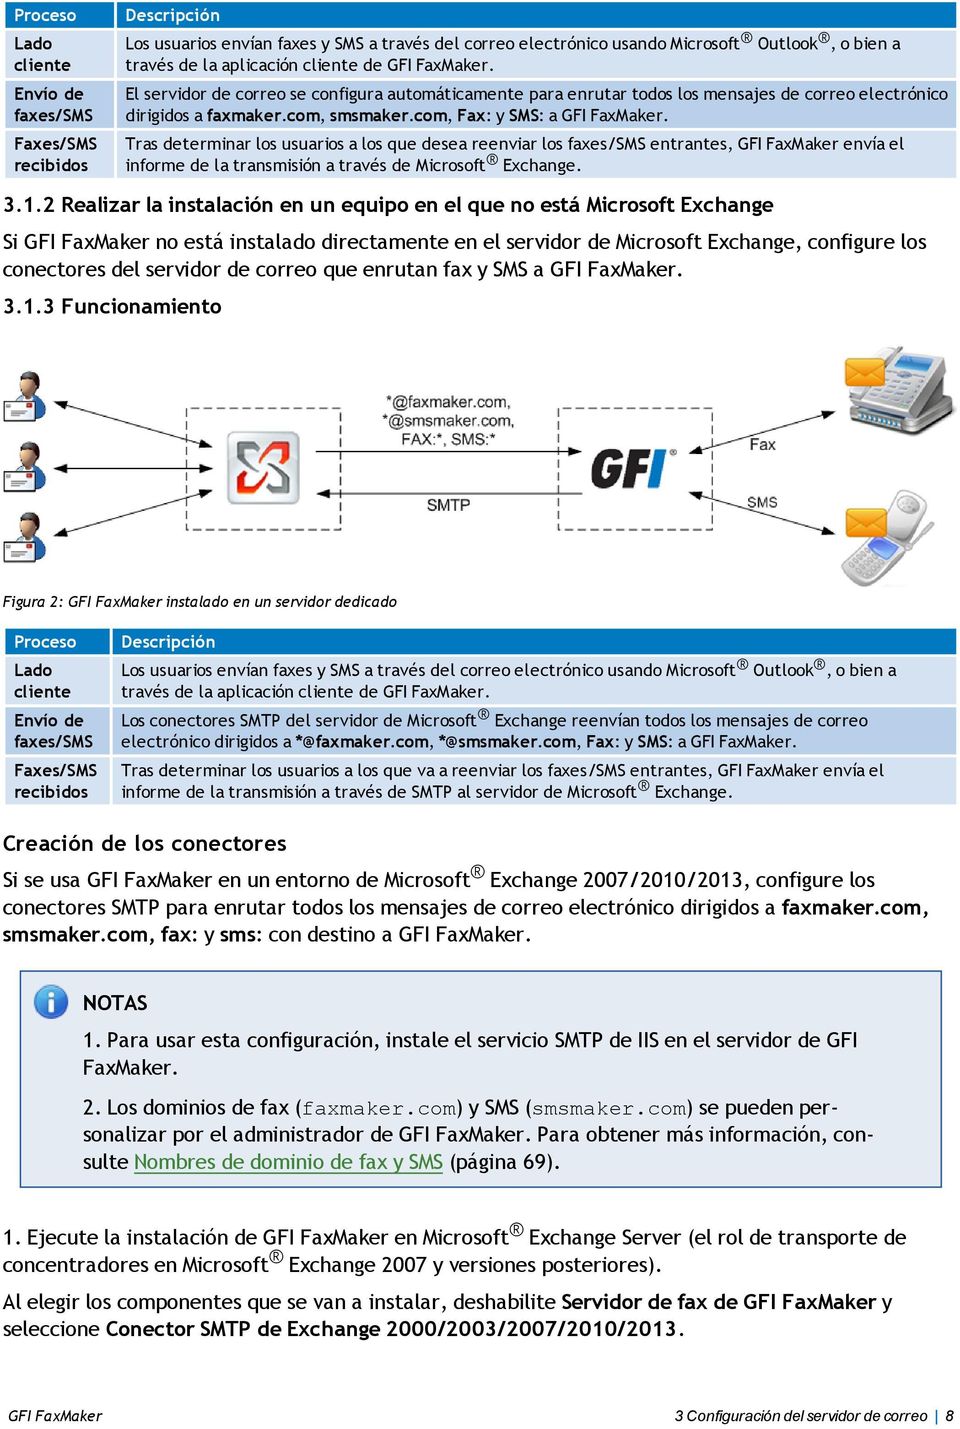 Tras determinar los usuarios a los que desea reenviar los faxes/sms entrantes, GFI FaxMaker envía el informe de la transmisión a través de Microsoft Exchange. 3.1.